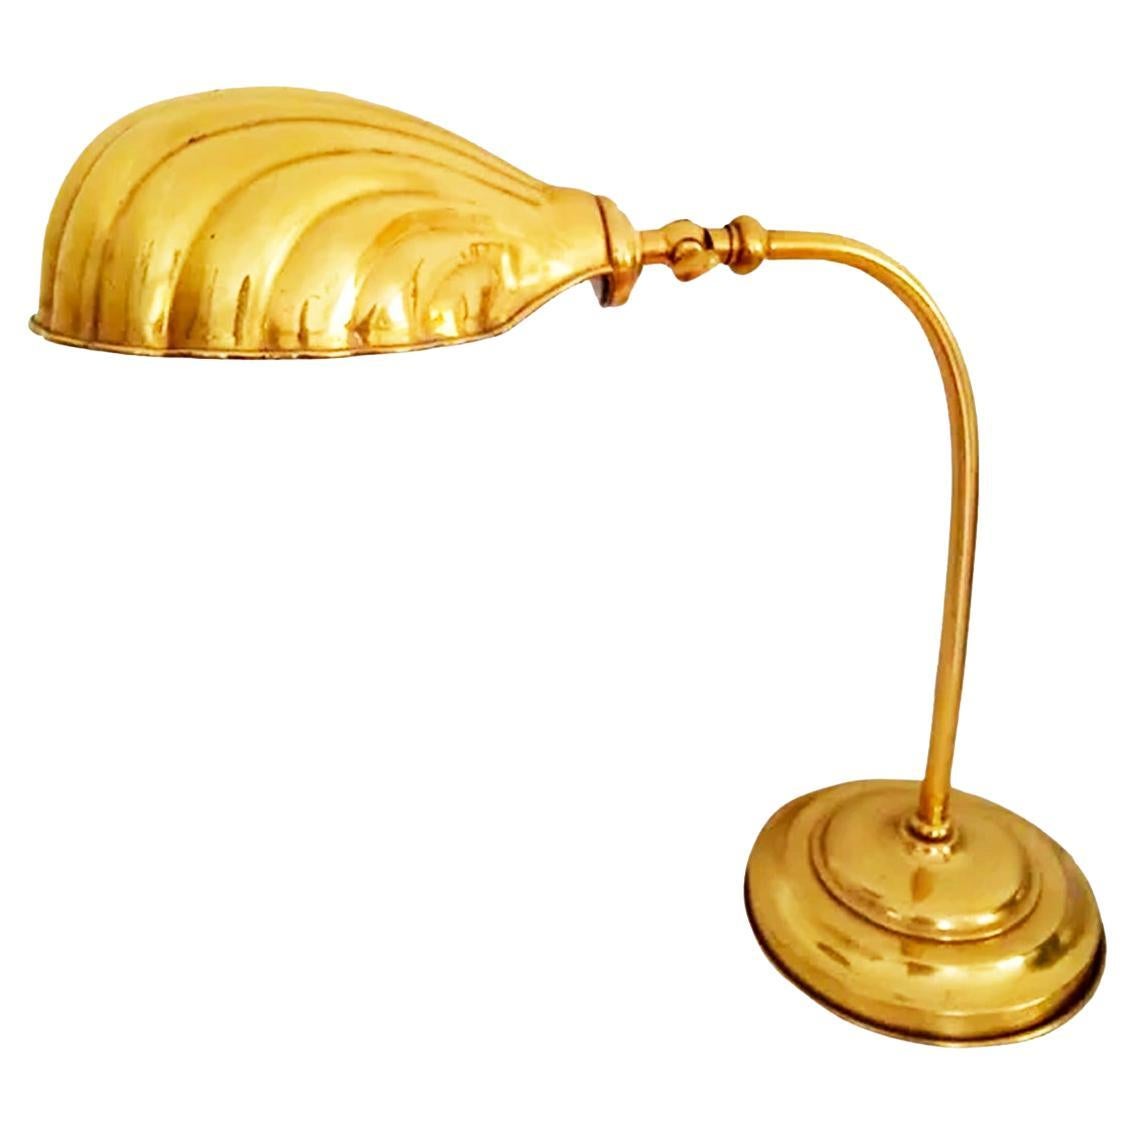 Schreibtischschale Flexo-Lampe, 20. Jahrhundert Art Nouveau, Art Deco. Tischlampe

Antike Schwanenhalslampe aus Messing, Anfang oder Mitte des 20.

Perfekter Zustand,, funktionstüchtig

Er ist schön mit seiner drehbaren Schale.

Sehr schön und